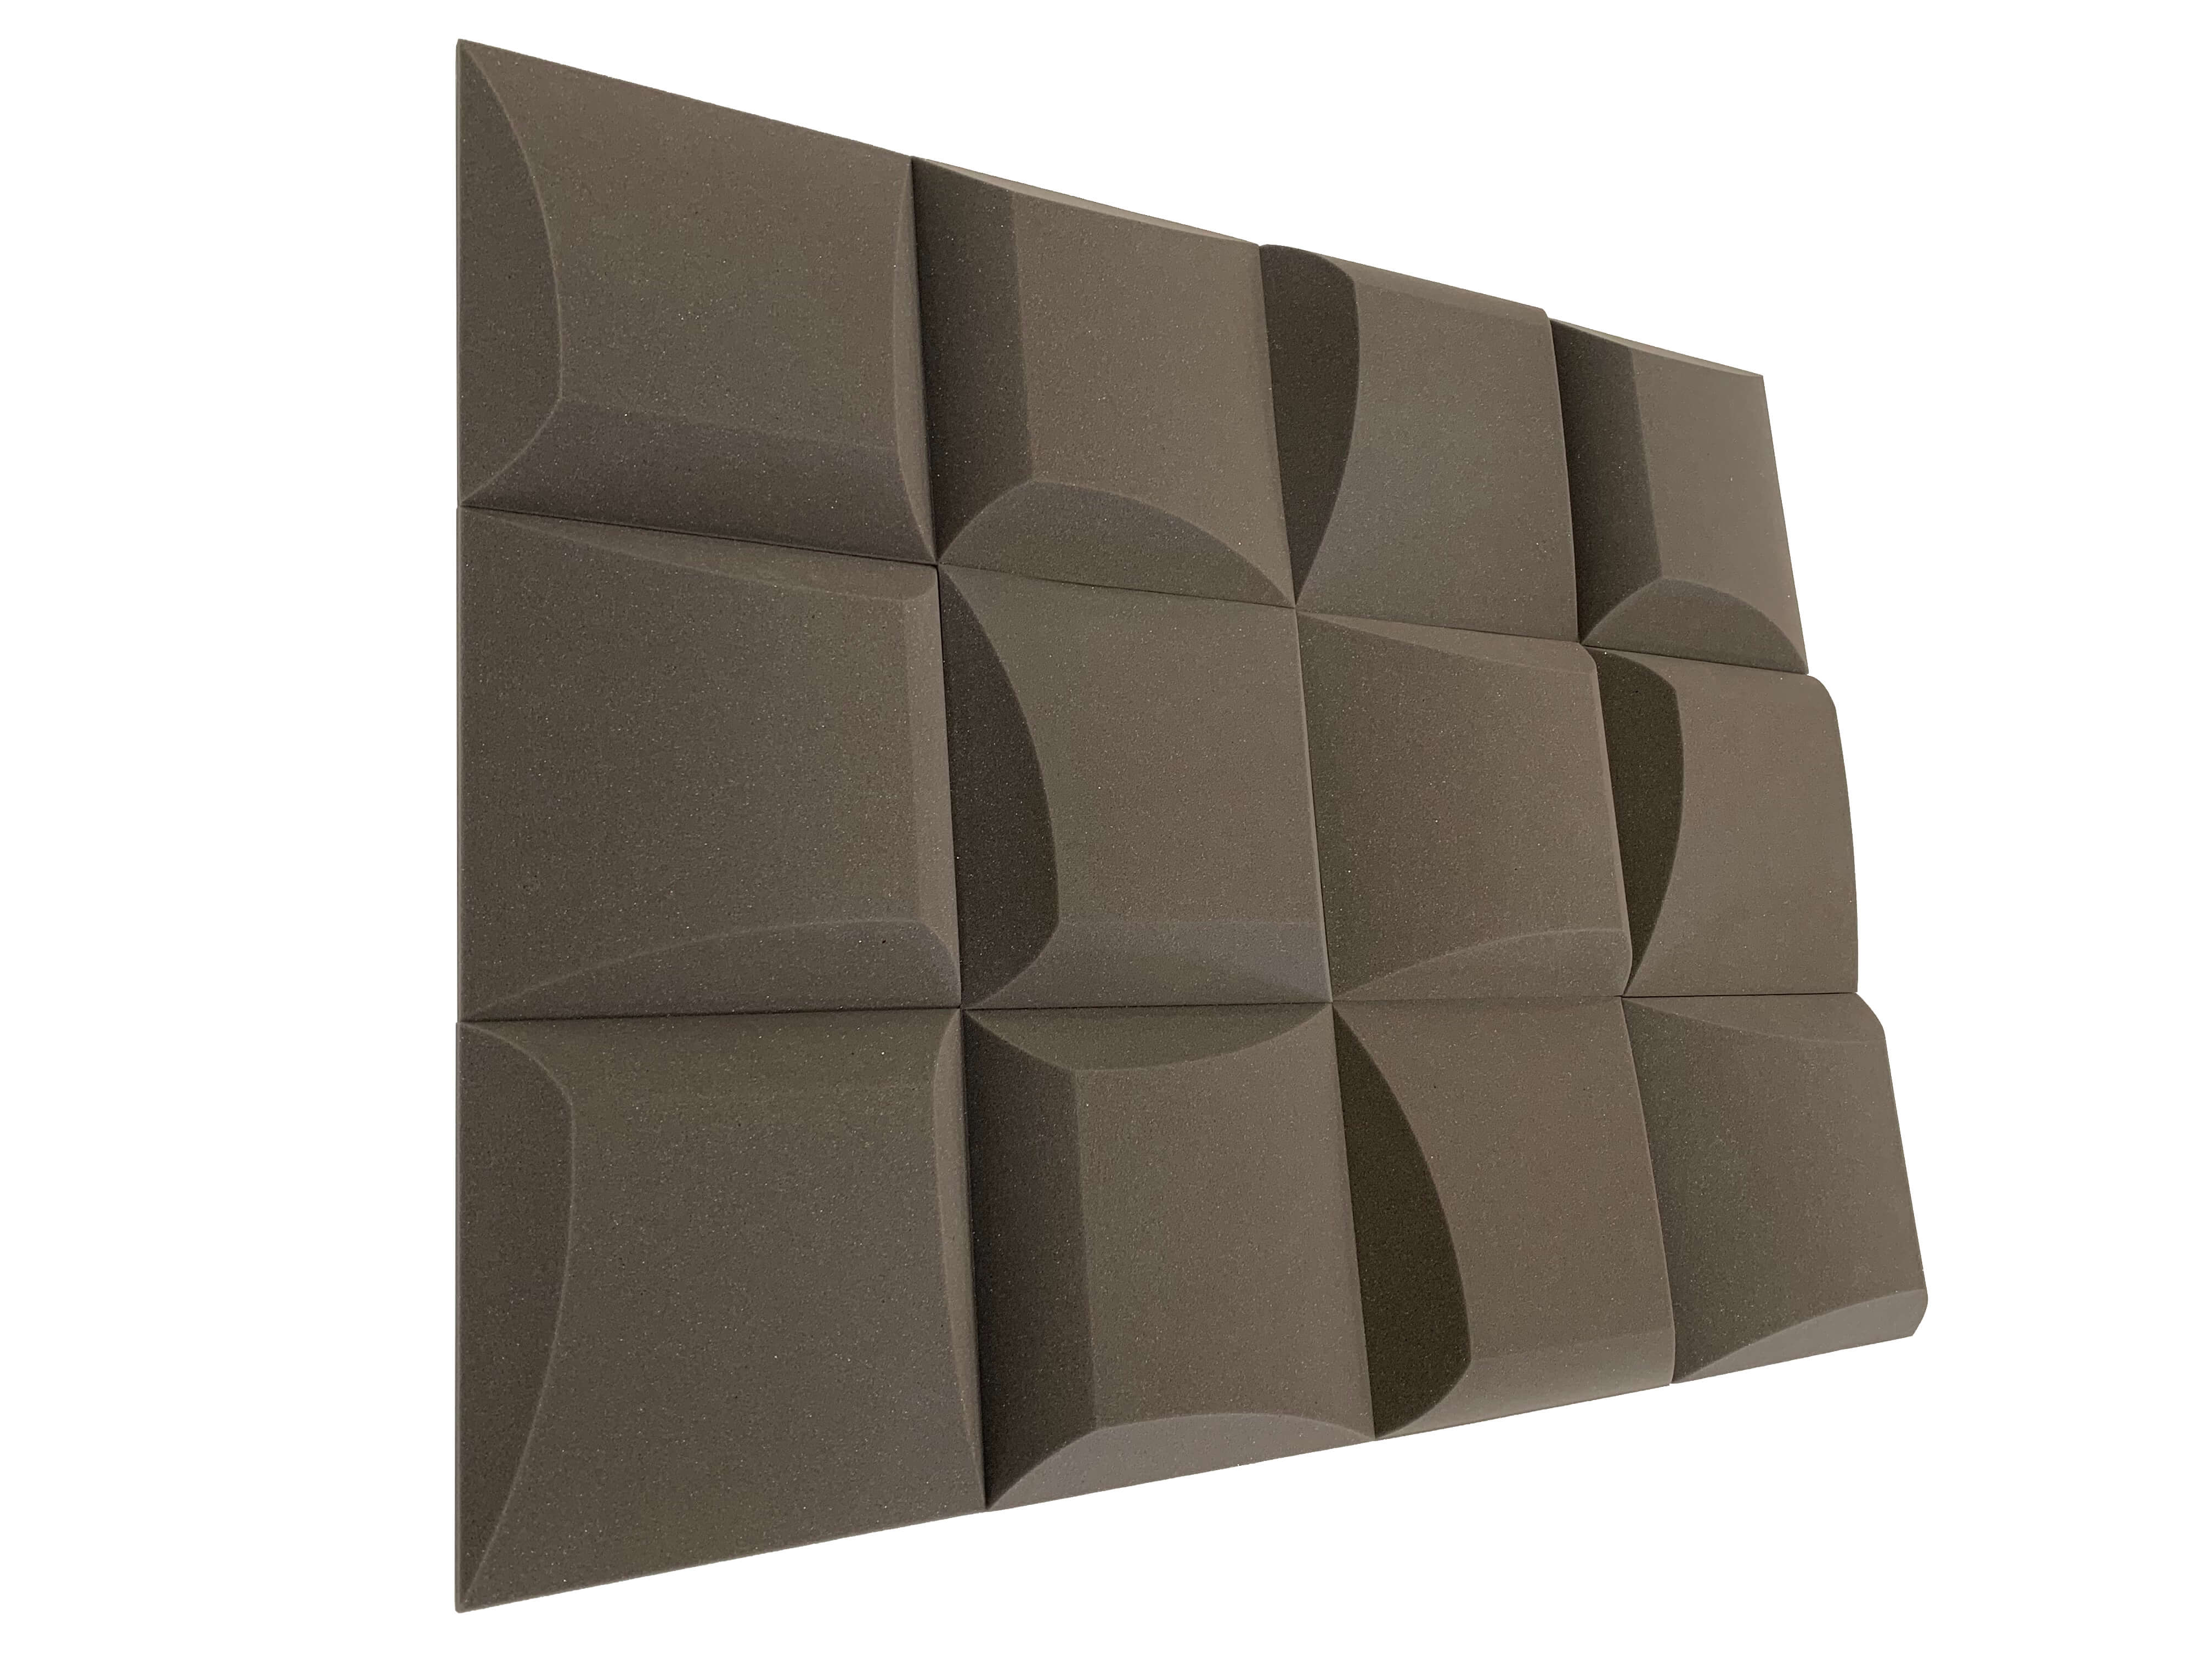 AeroFoil 12" Acoustic Studio Foam Tile Pack - 12 Tiles, 1.1qm Coverage - 0